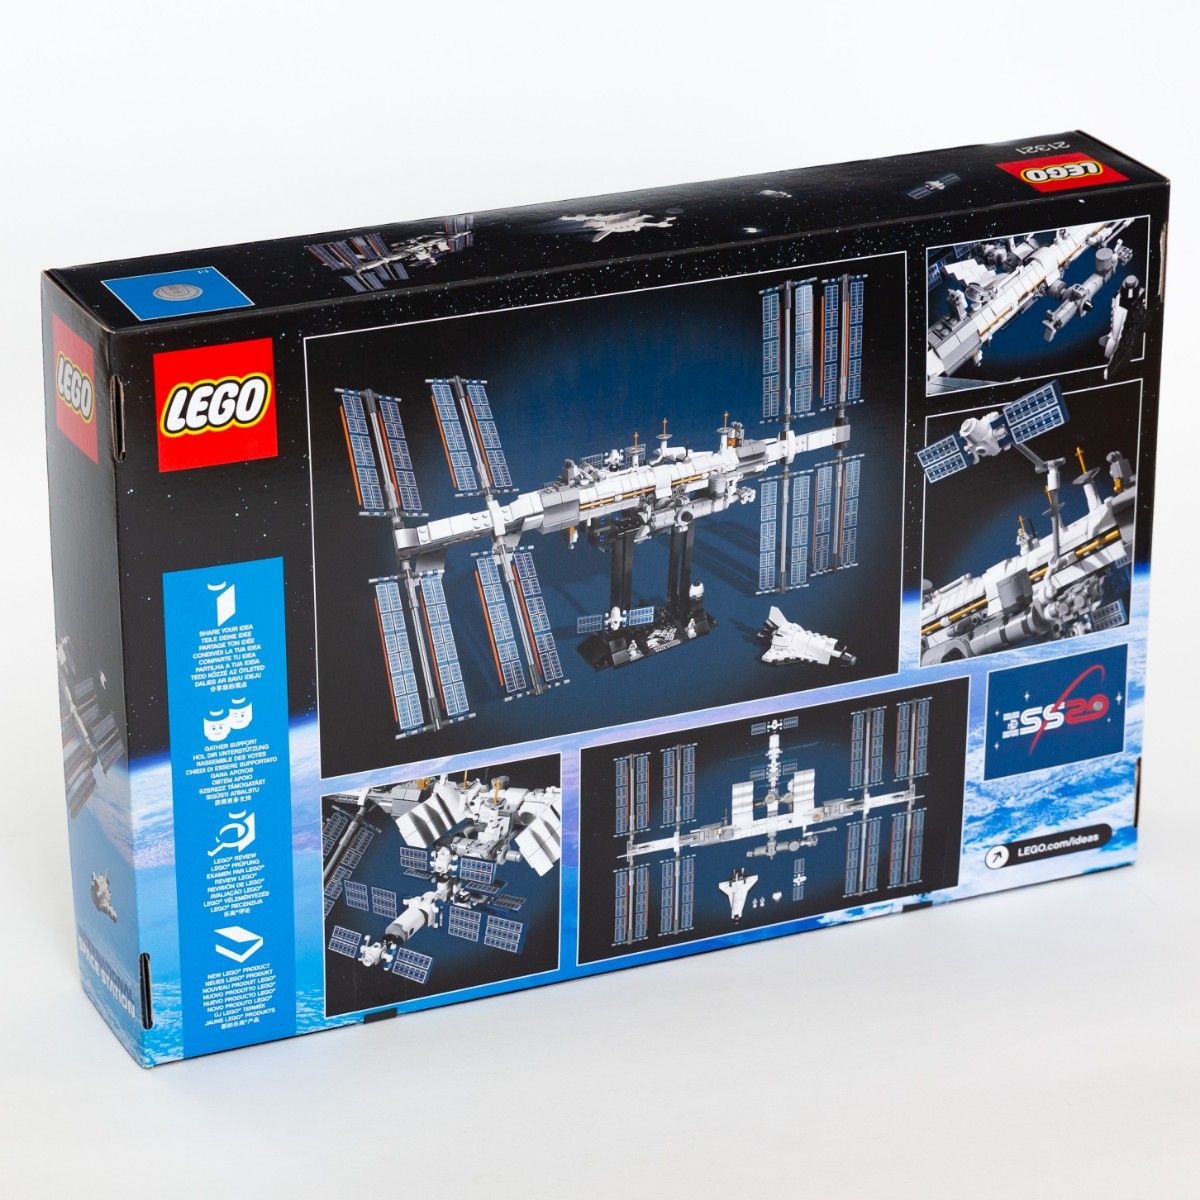 【新品】 レゴ LEGO 21321 アイデア 国際宇宙ステーション International Space Station